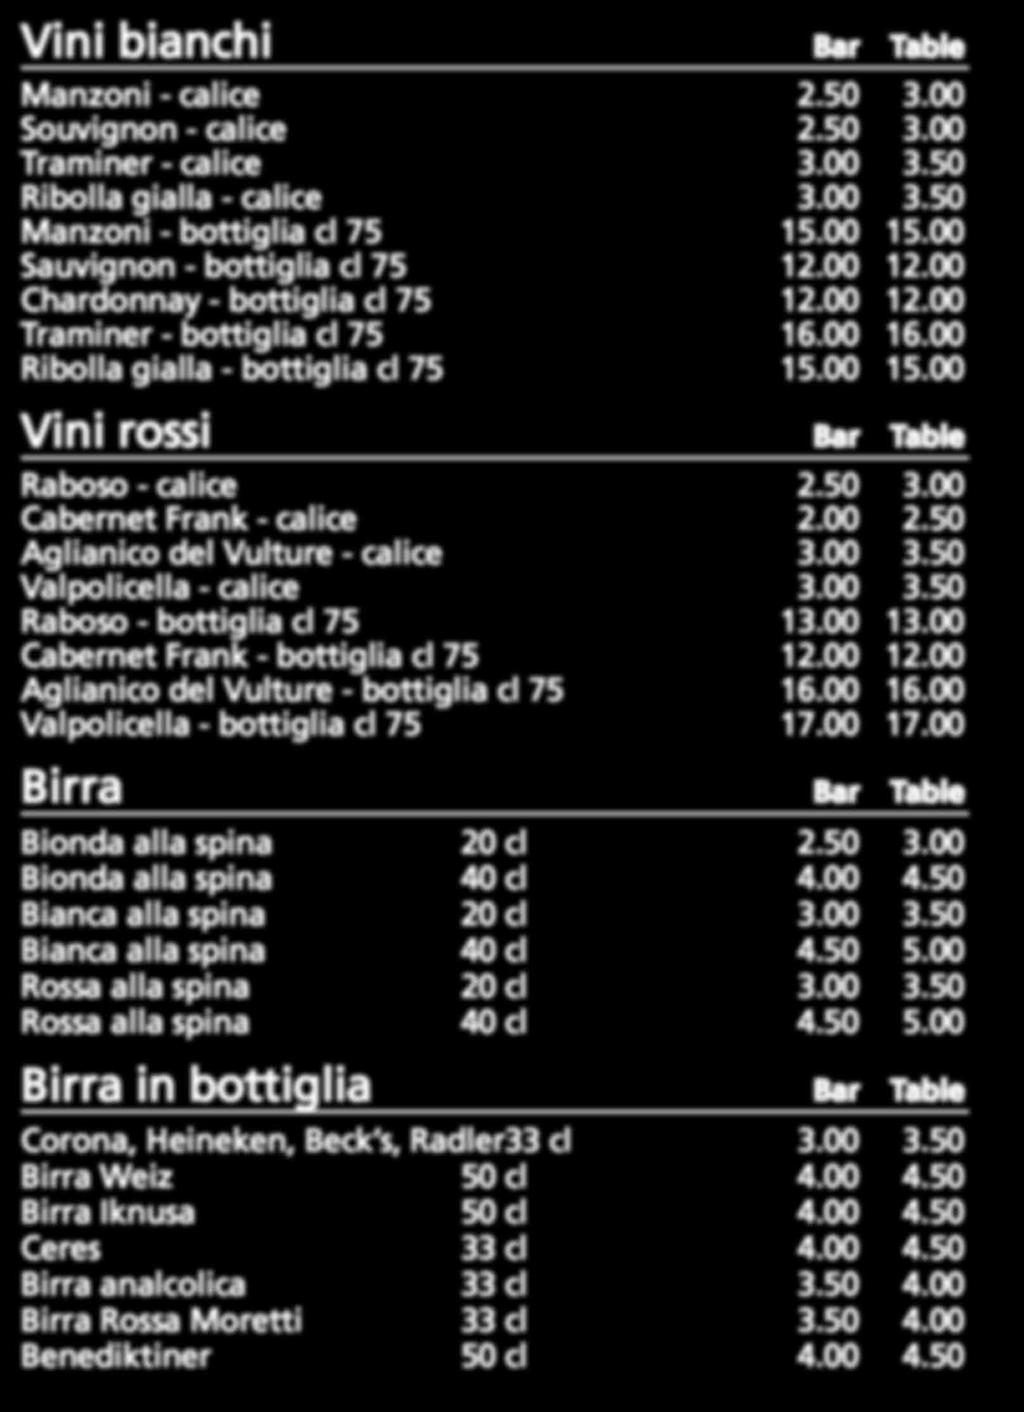 Vini bianchi Bar Table Manzoni - calice 2.50 3.00 Souvignon - calice 2.50 3.00 Traminer - calice 3.00 3.